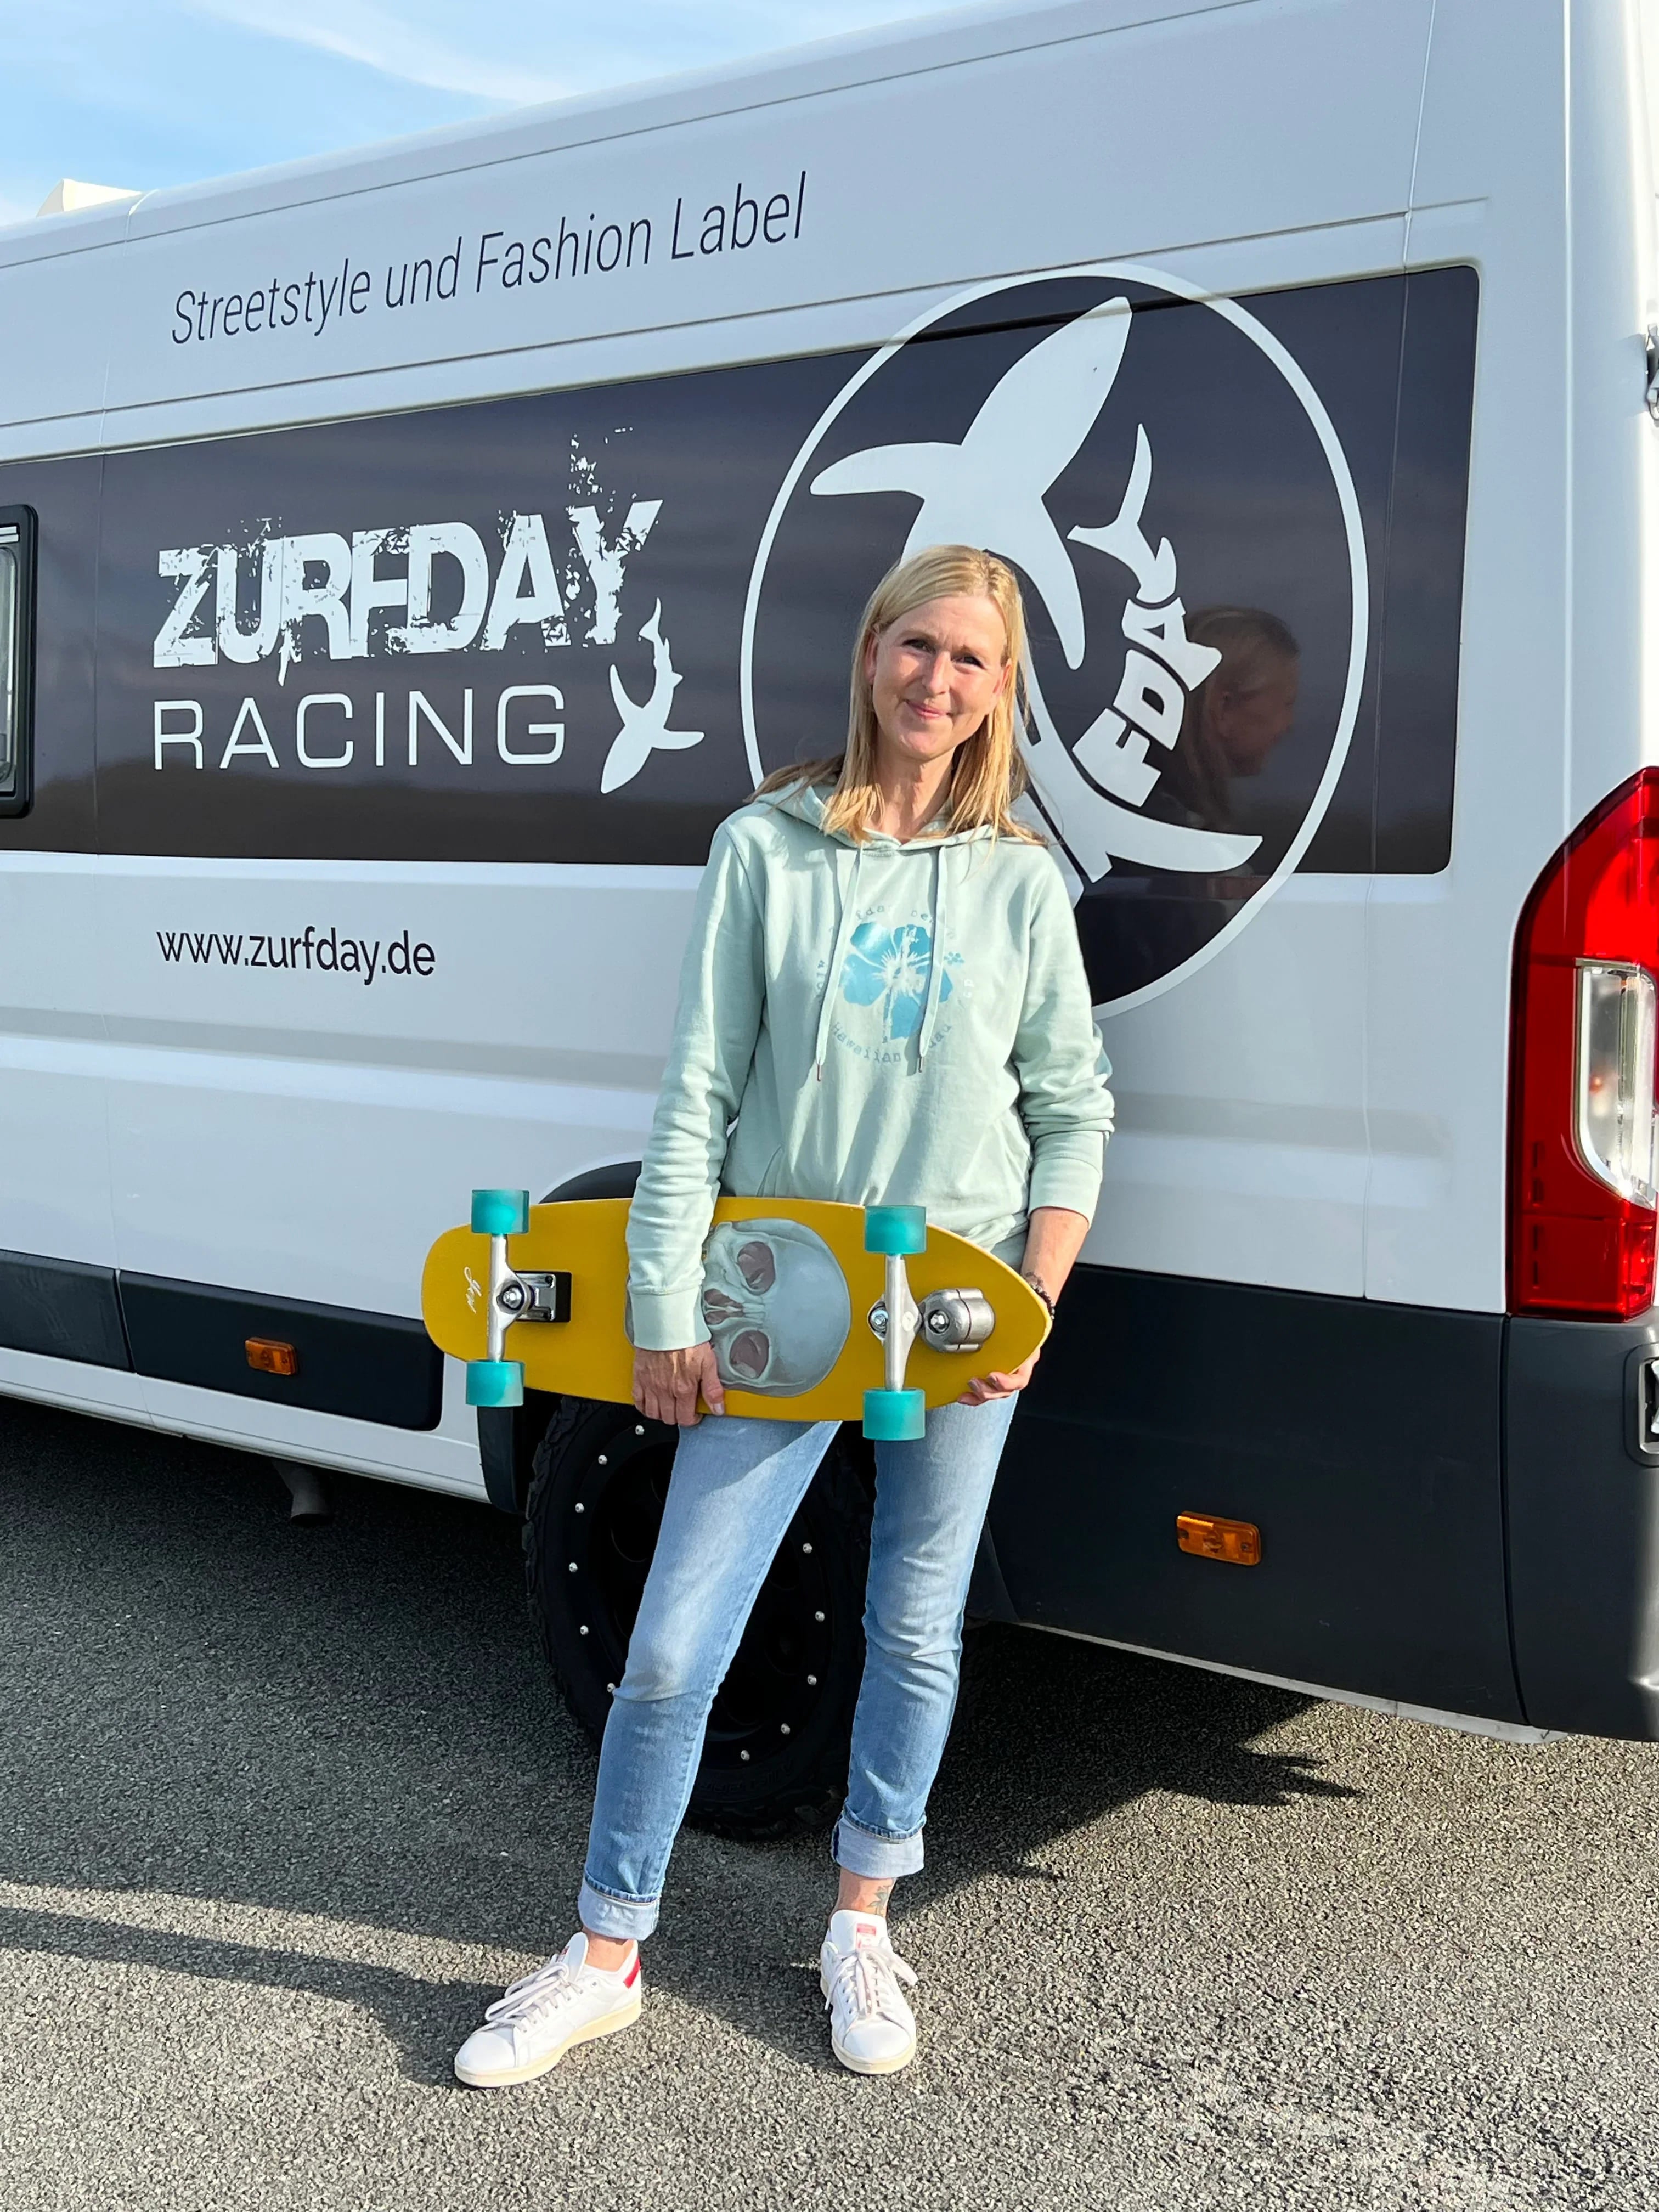 Kristine im Zurfday-Look und mit gelben Skateboard.